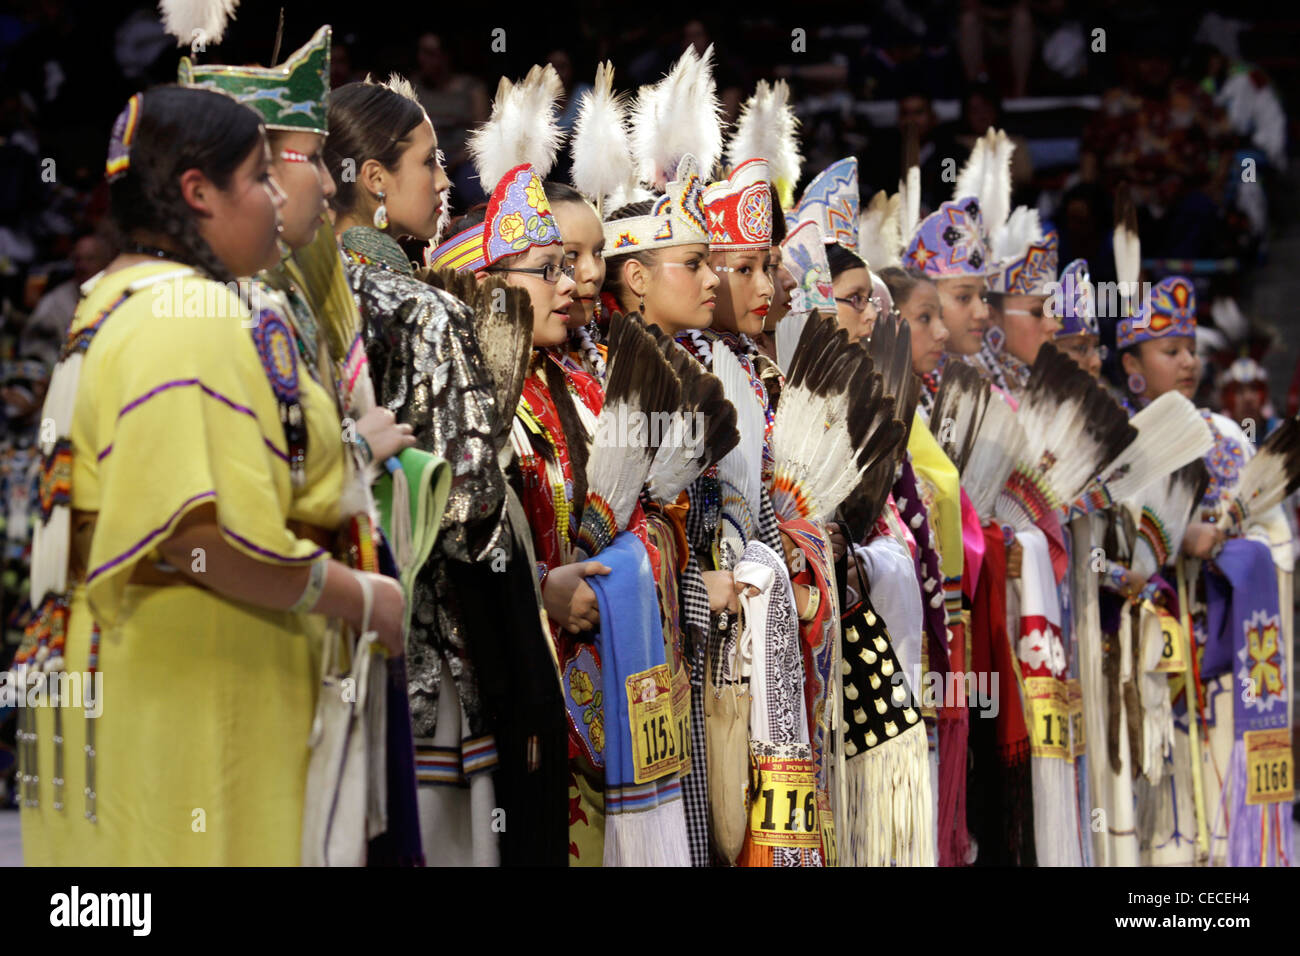 Albuquerque, Nuovo Messico. I partecipanti al raduno di nazioni, un evento annuale presentato come il più grande Powwow nel mondo. Foto Stock